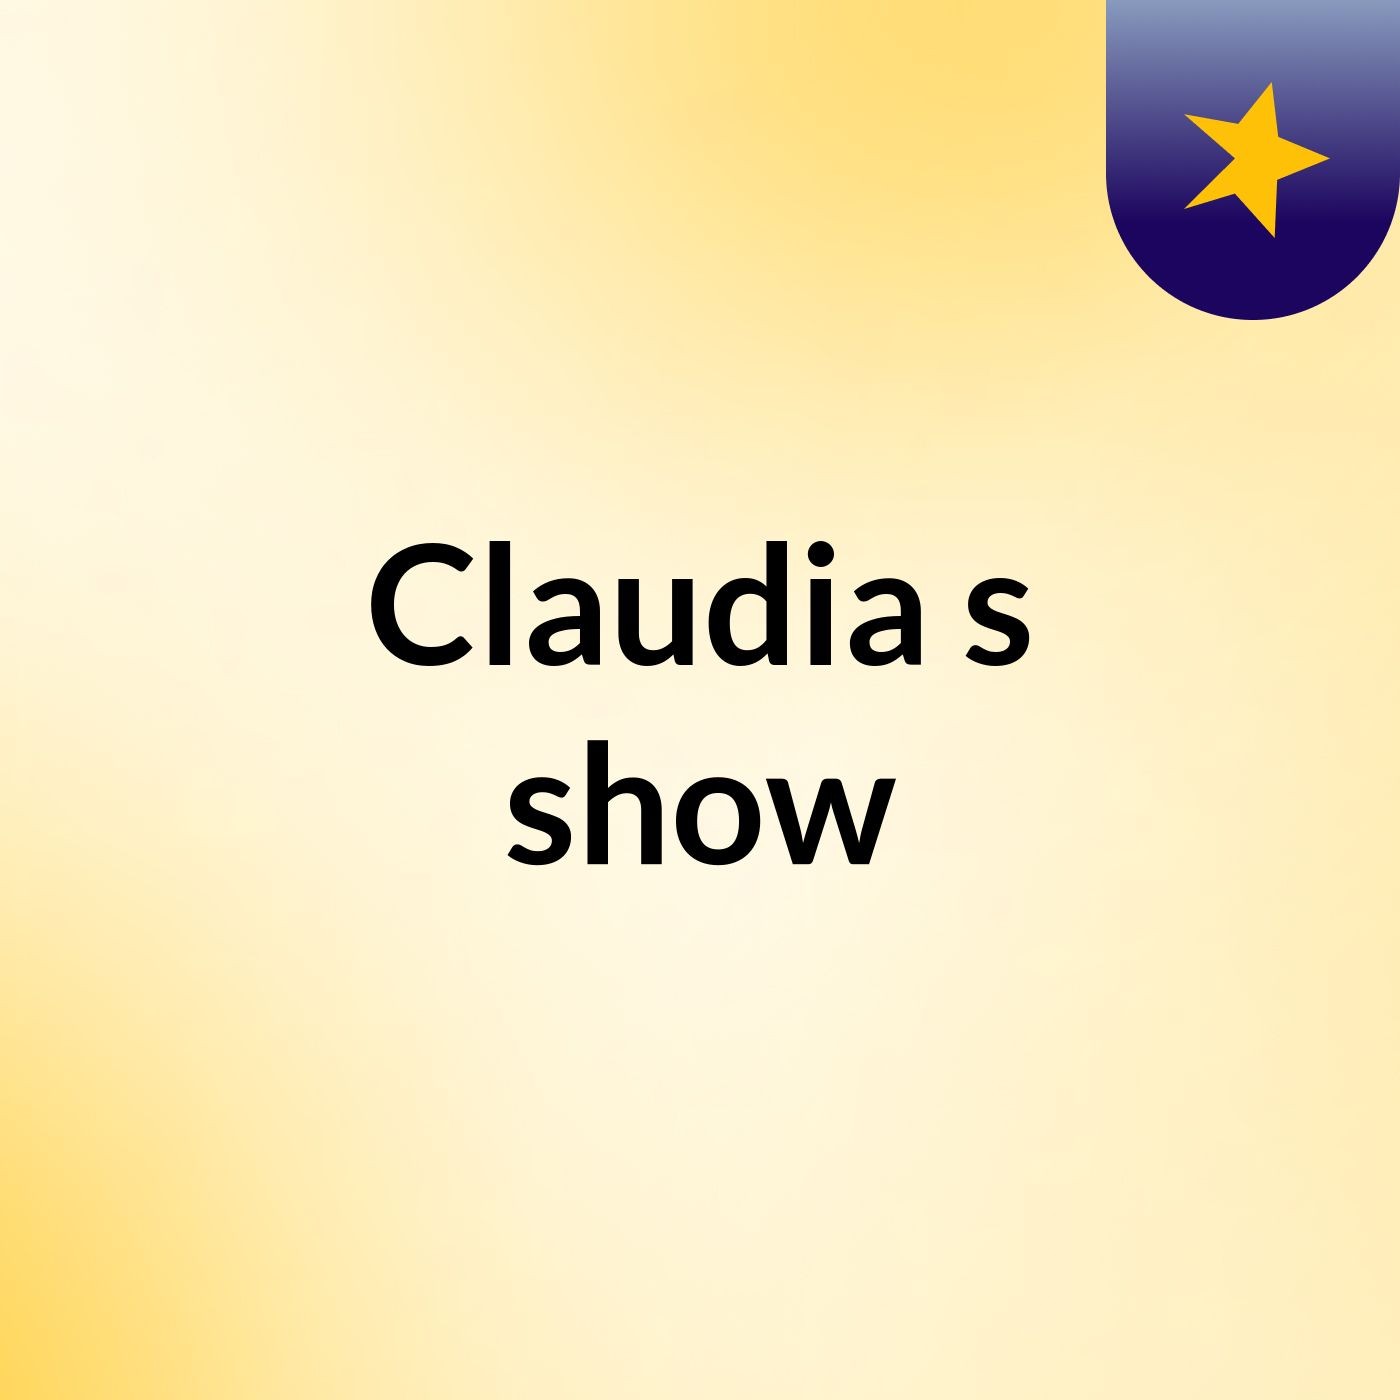 Claudia's show